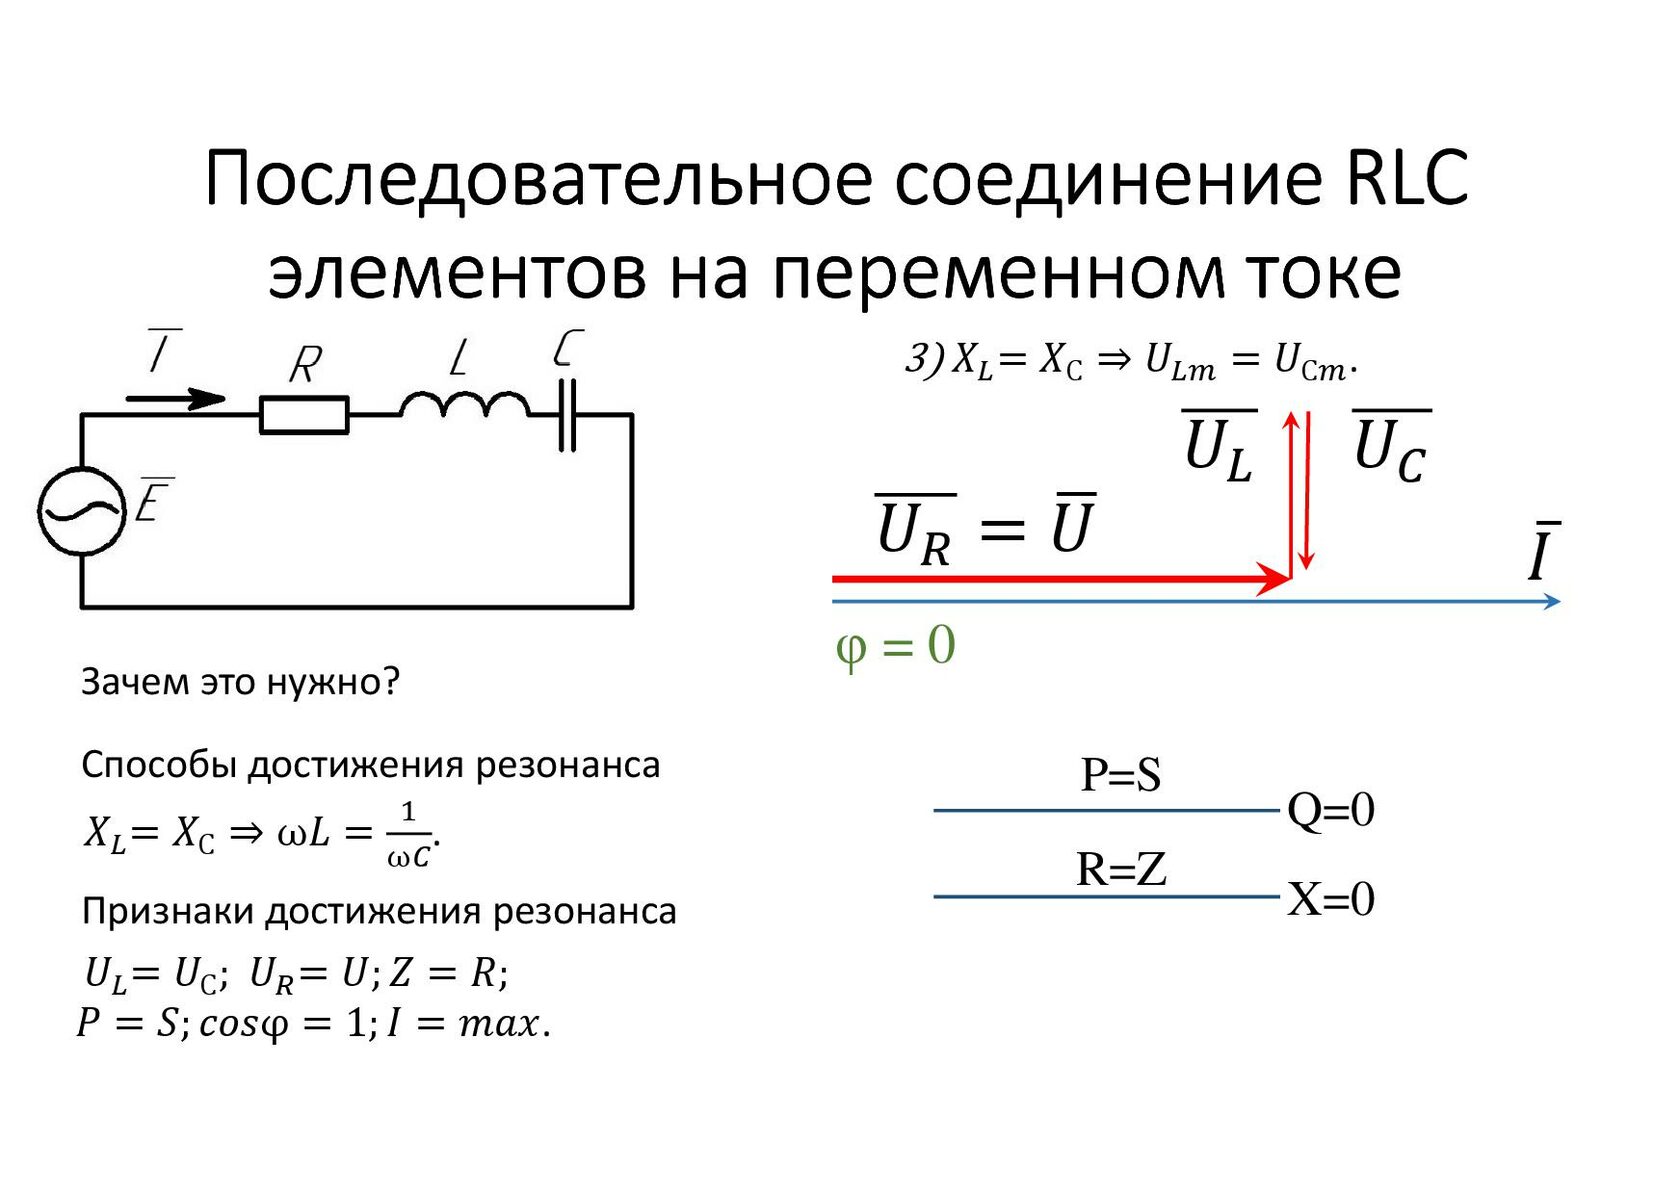 Частота резонанса катушки. RLC цепи переменного тока. Электрические цепи с параллельным соединением RLC. Последовательное подключение в переменном токе. Электрическая цепь с параллельным соединением RLC-элементов.